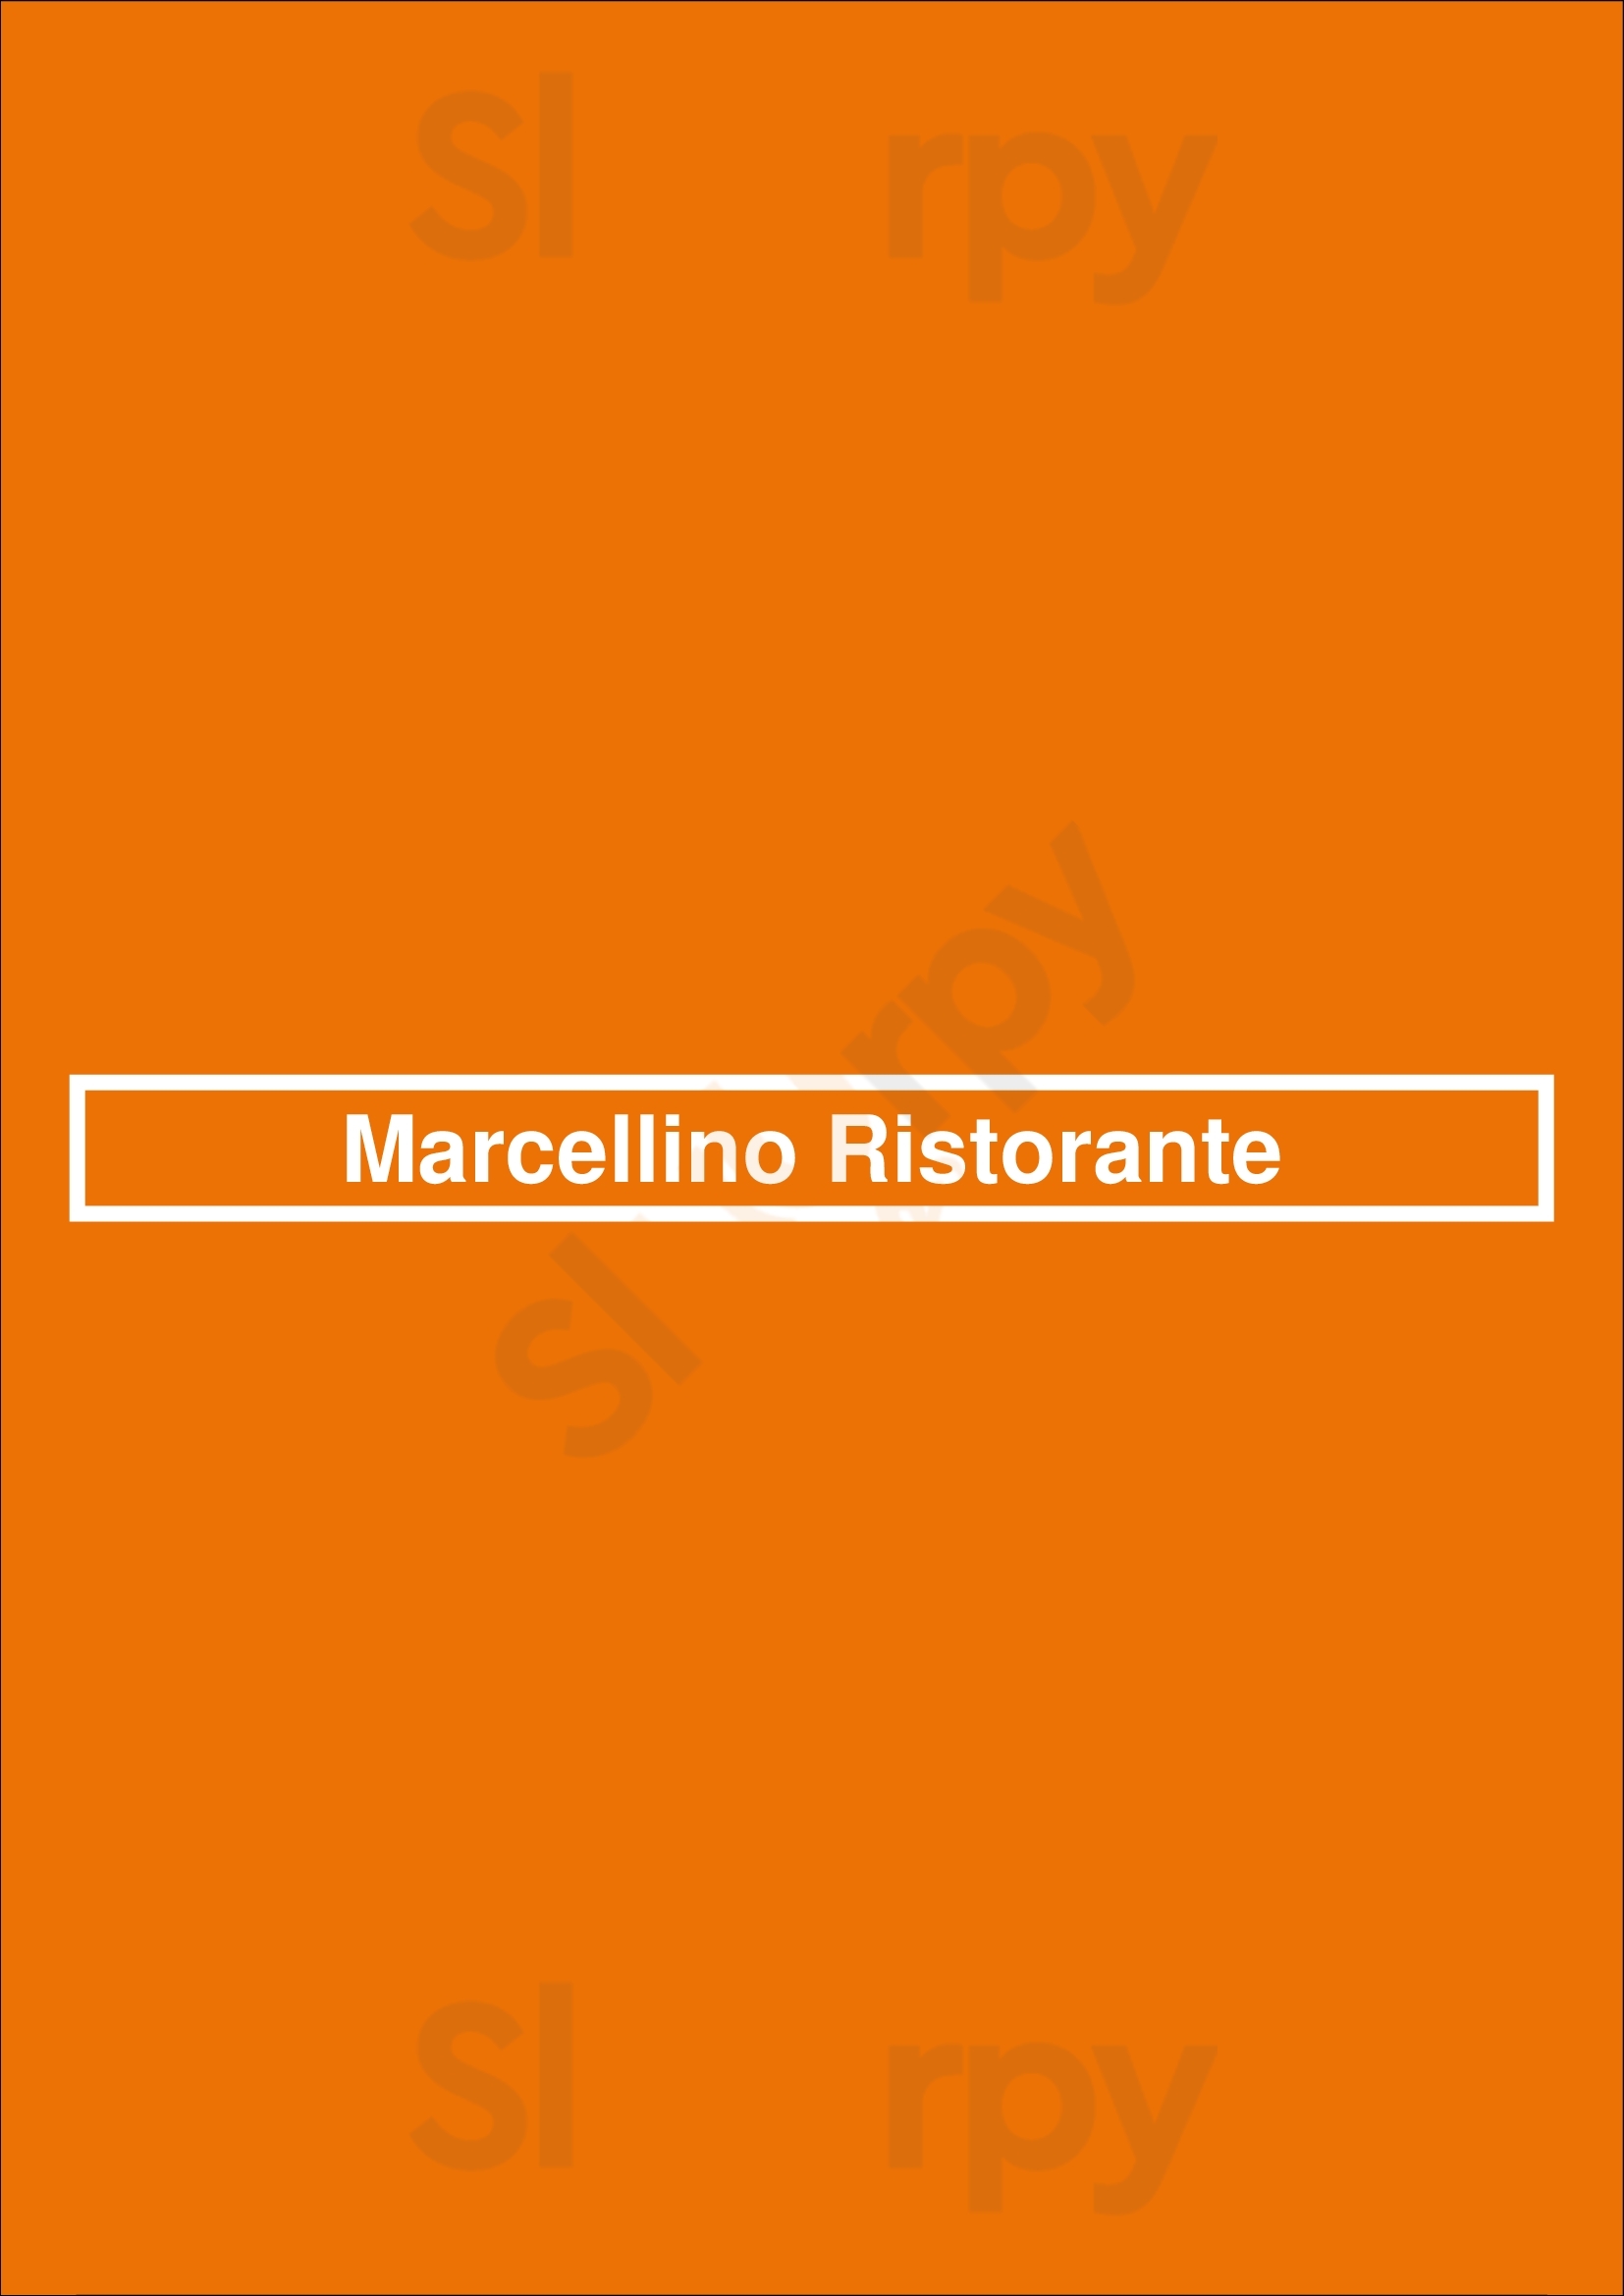 Marcellino Ristorante Scottsdale Menu - 1